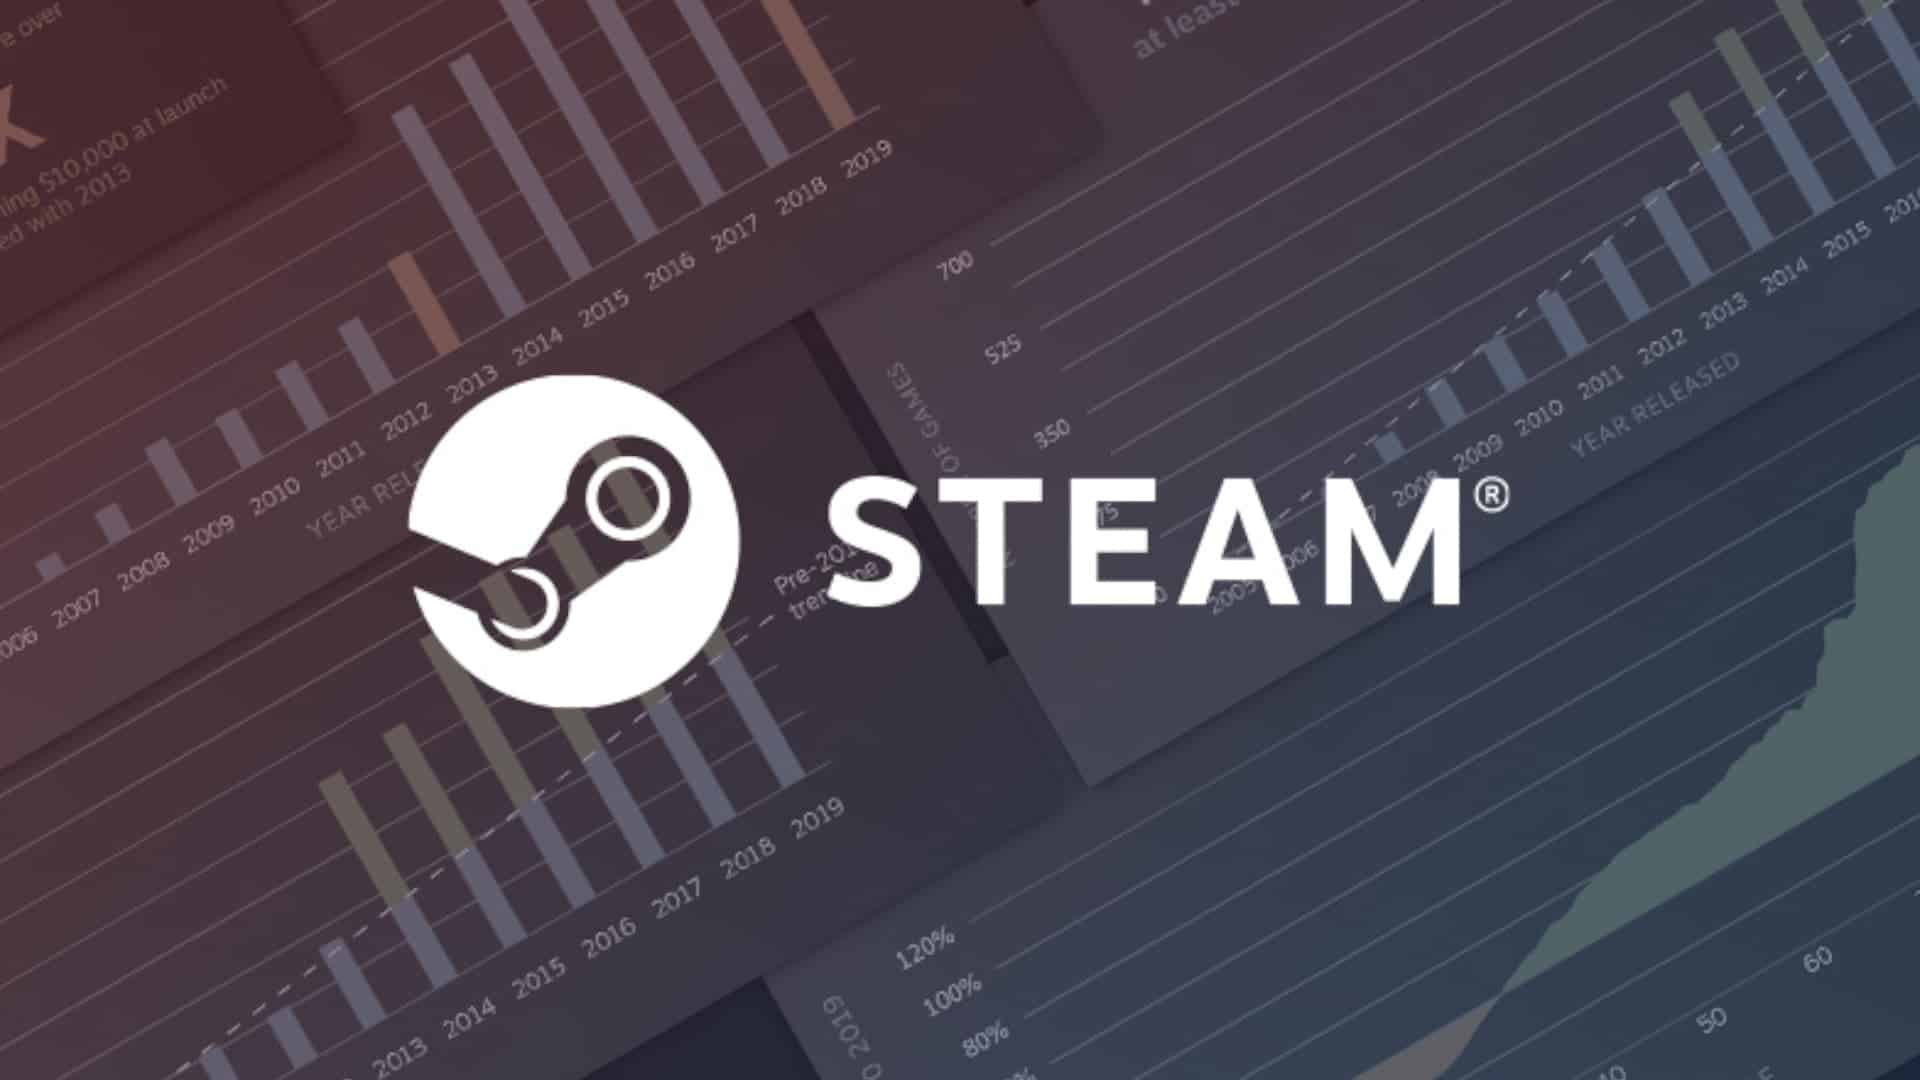 Valve proíbe jogos de nft, mas a epic não | c7e1f1de steam profits | criptomoeda | valve proíbe jogos de nft criptomoeda